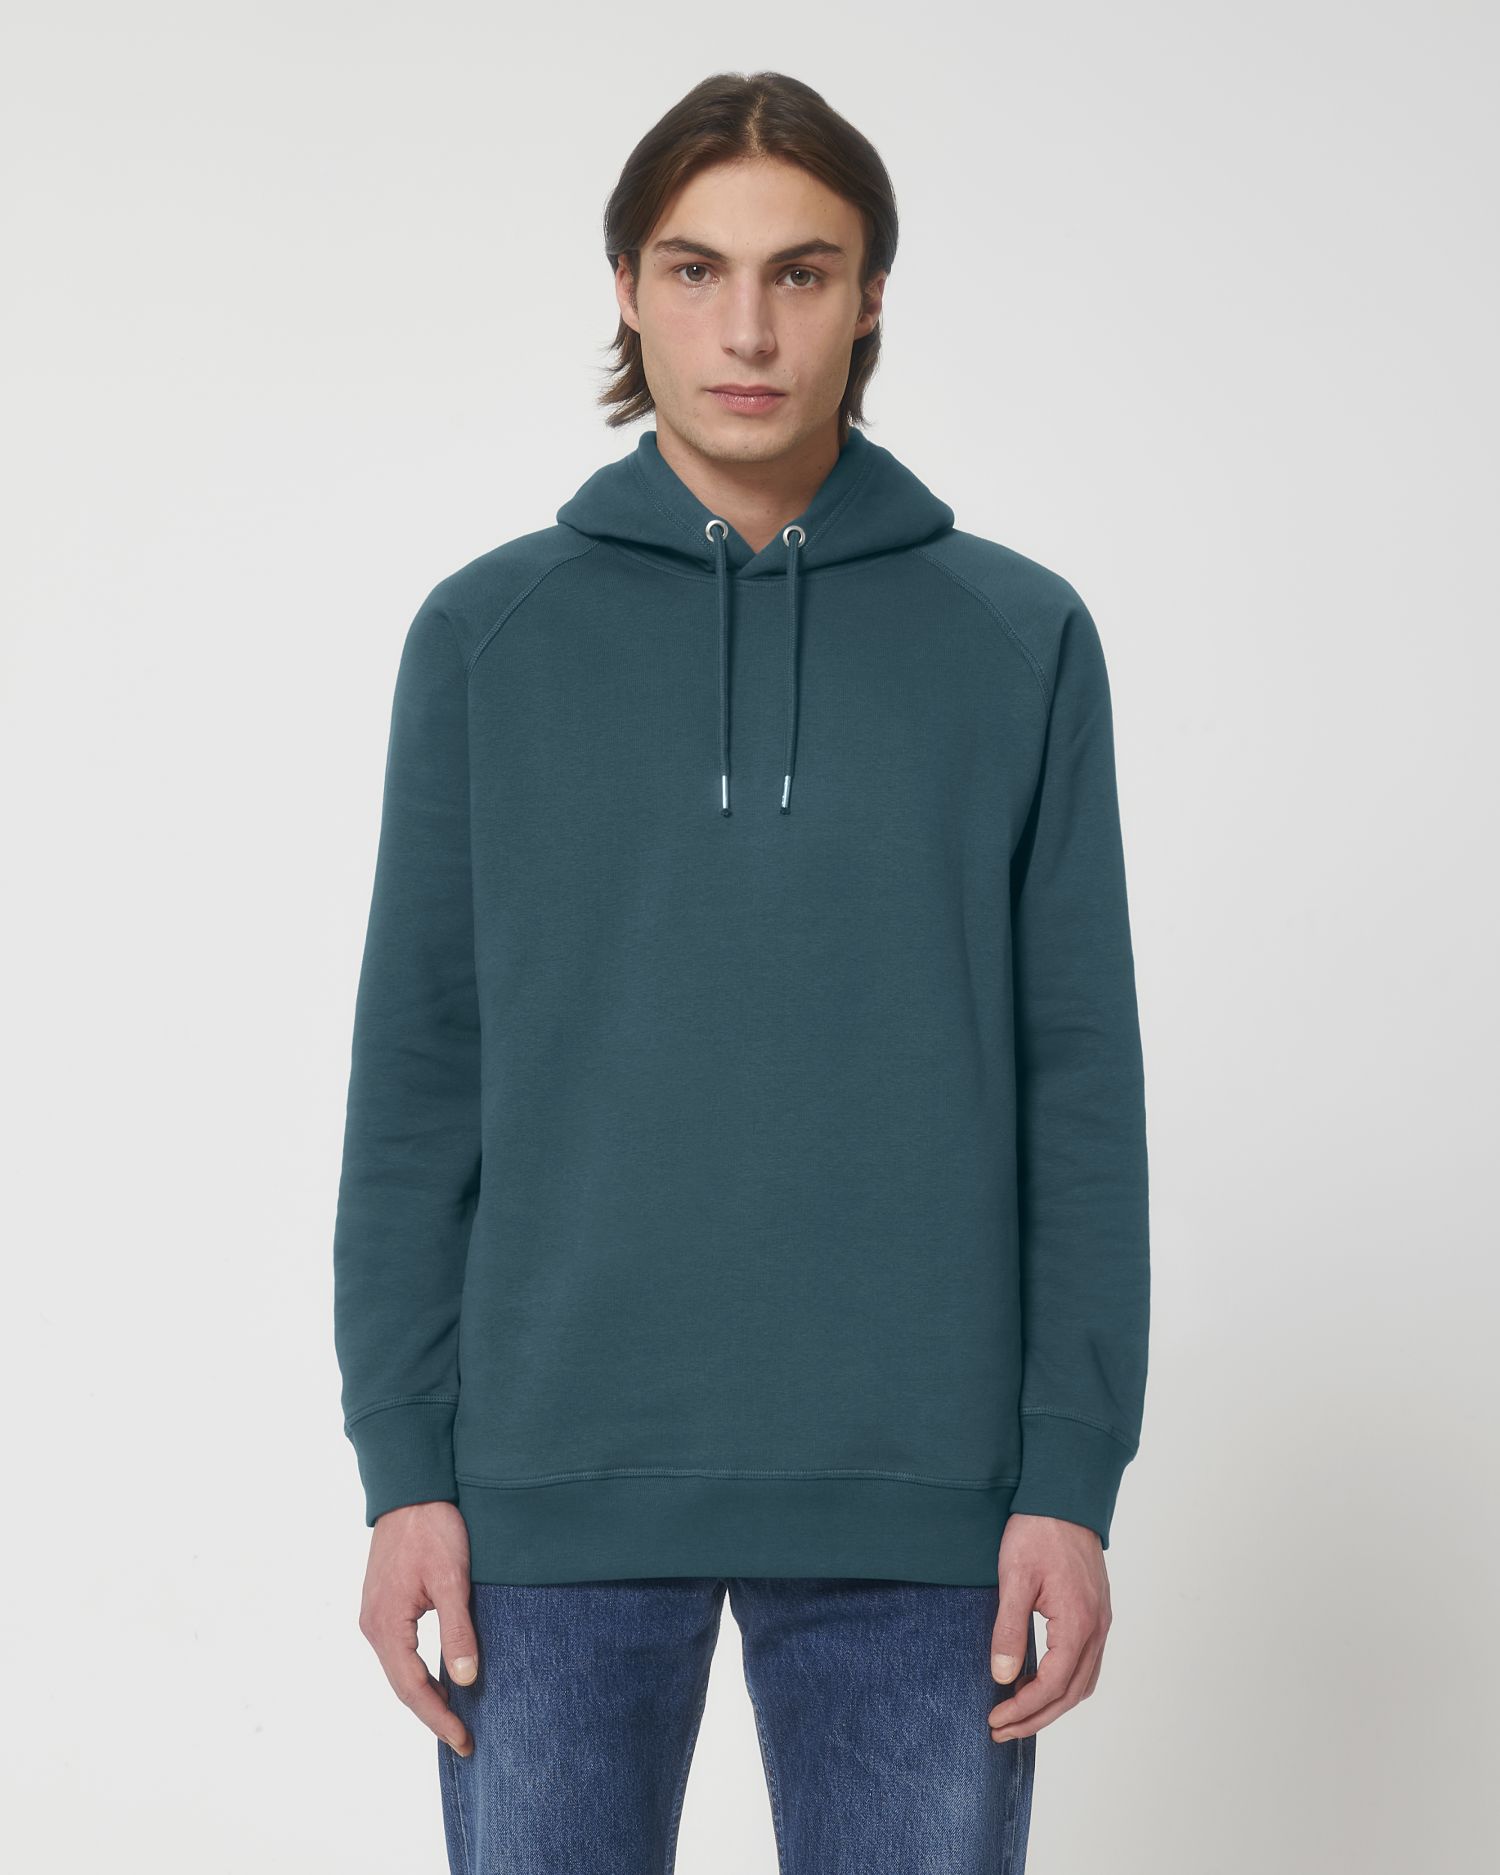 Hoodie sweatshirts Sider in Farbe Stargazer